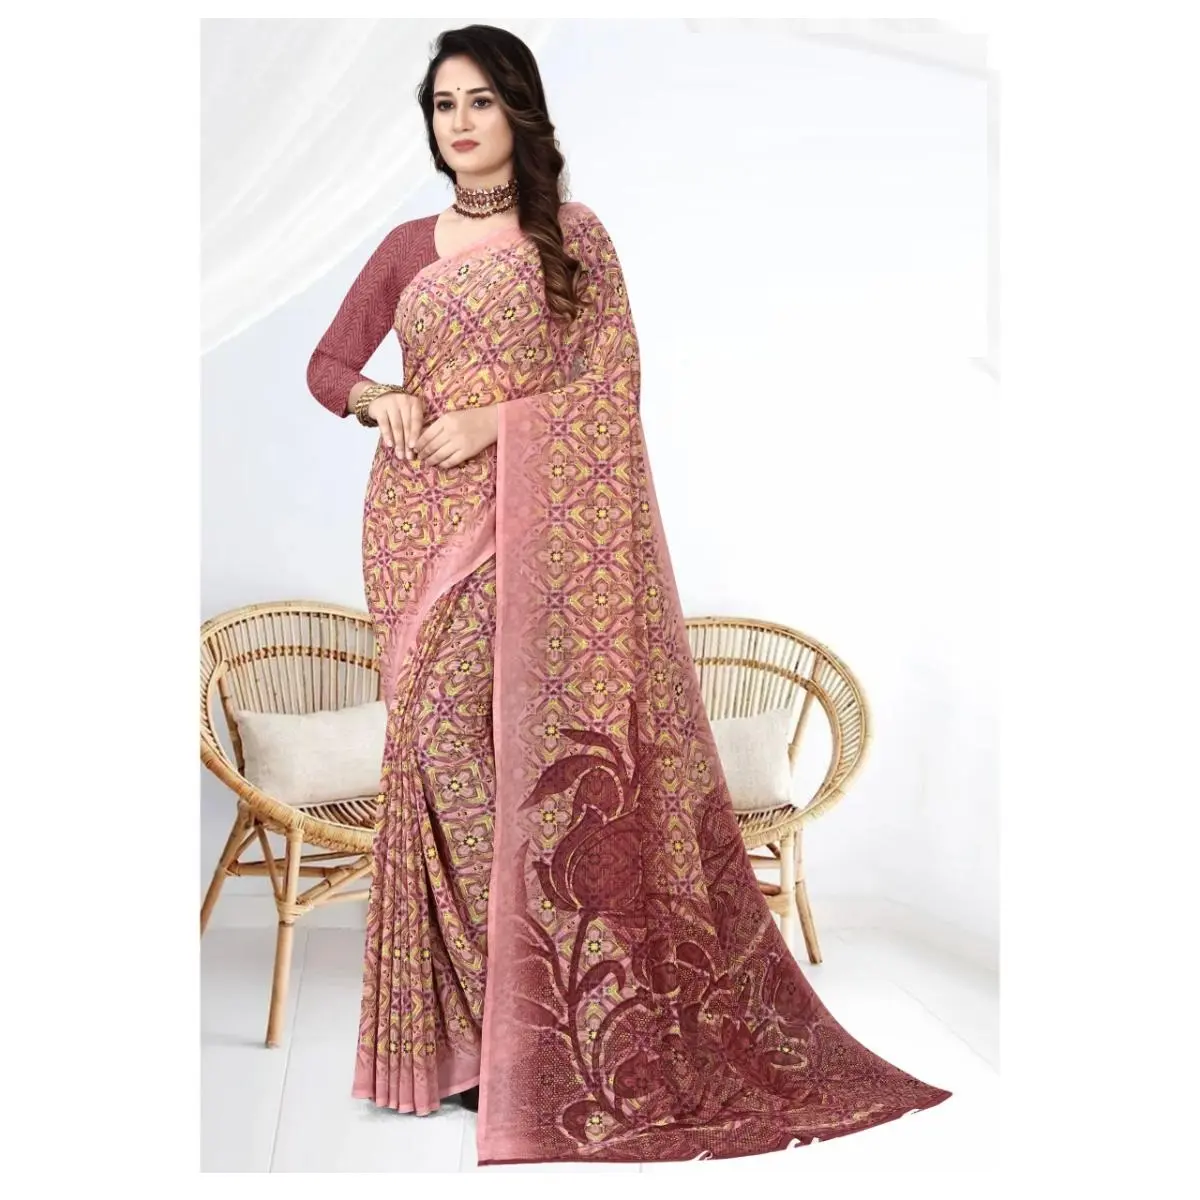 Indische ethnische Kleidung mehrfarbige Georgette Damen Saree mit zusätzlichem Bluse-Teil vom indischen Exporteur und Hersteller